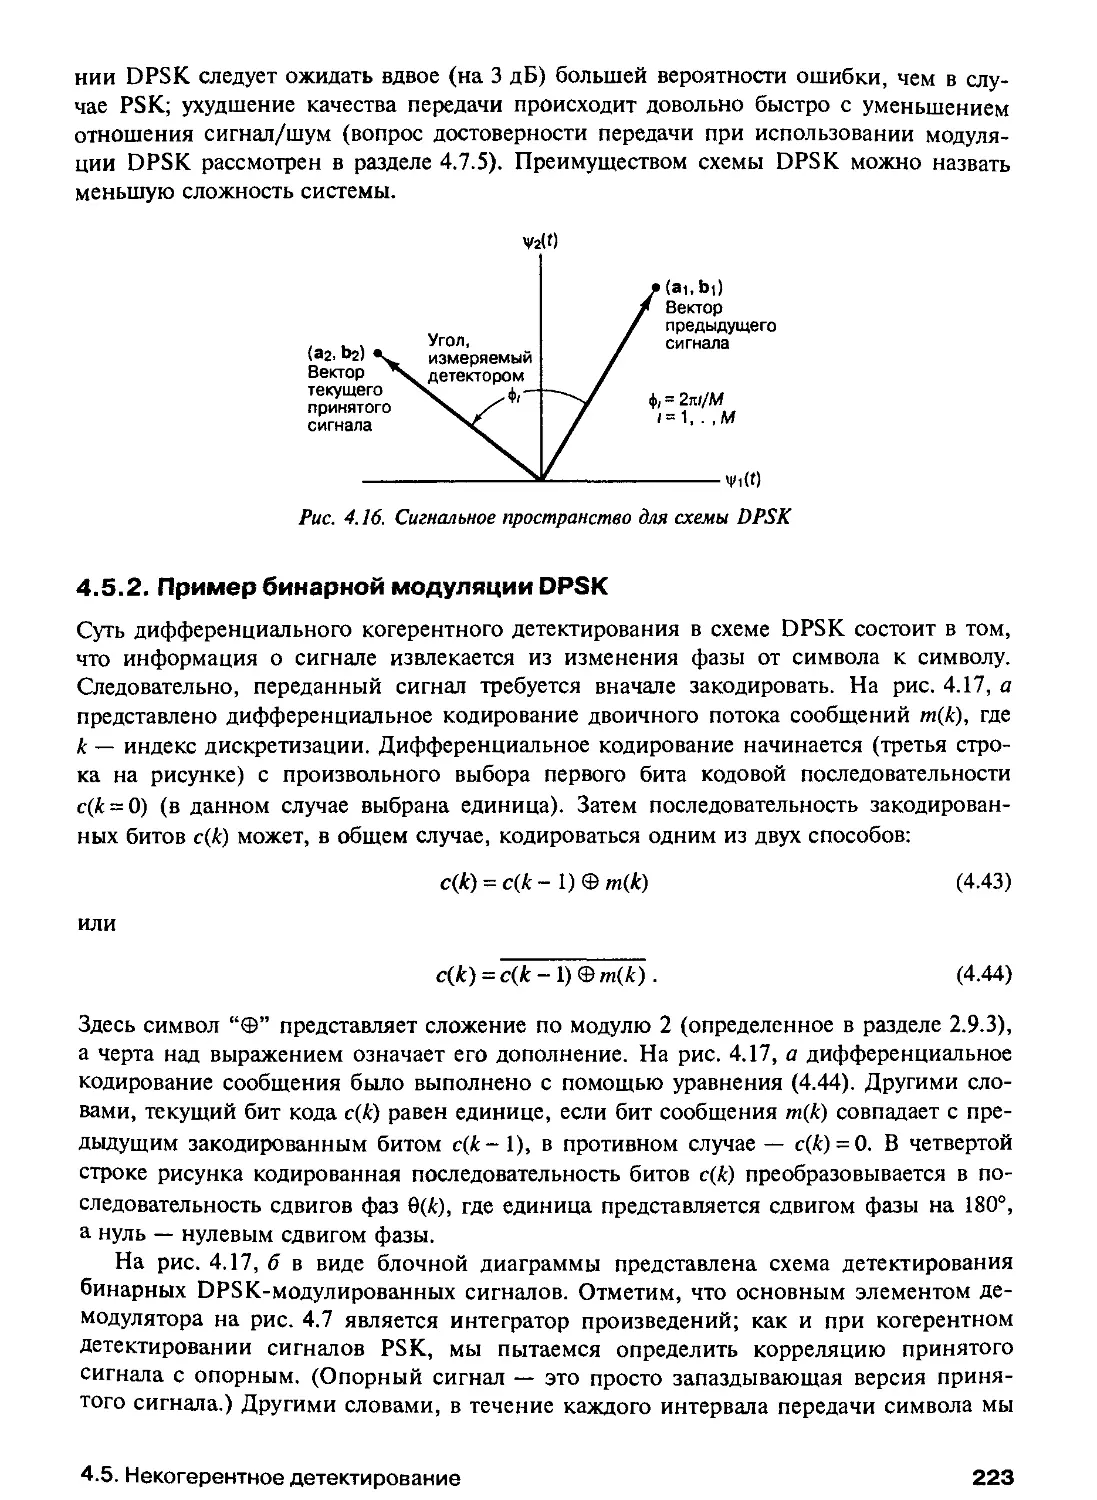 4.5.2. Пример бинарной модуляции DPSK